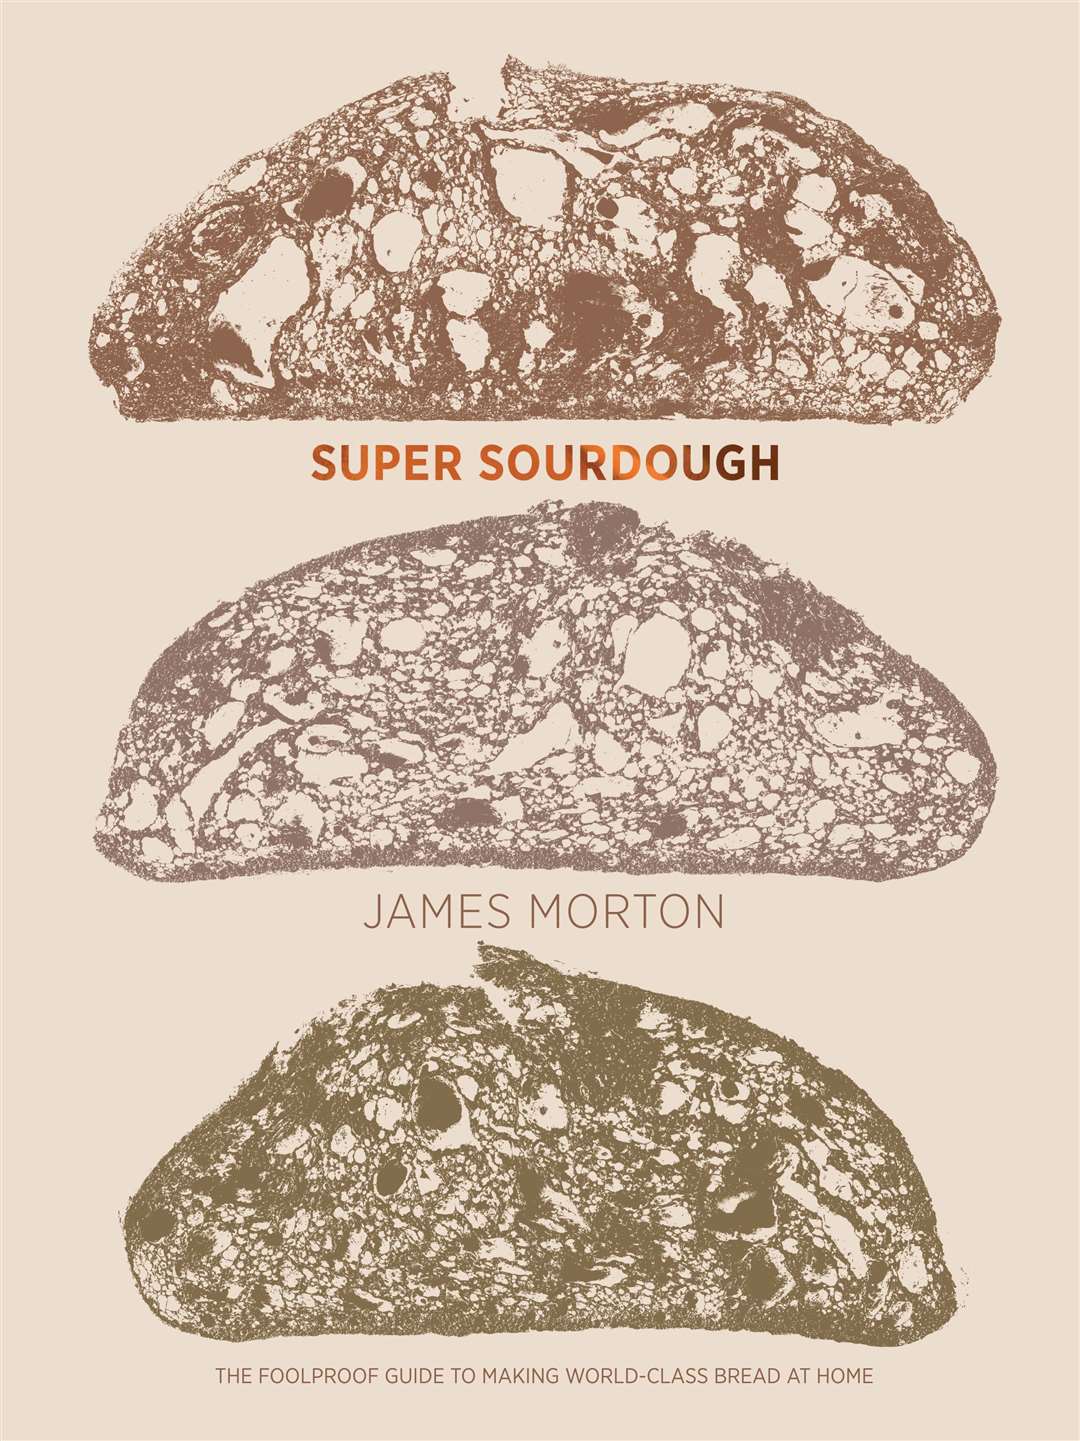 Super Sourdough by James Morton.